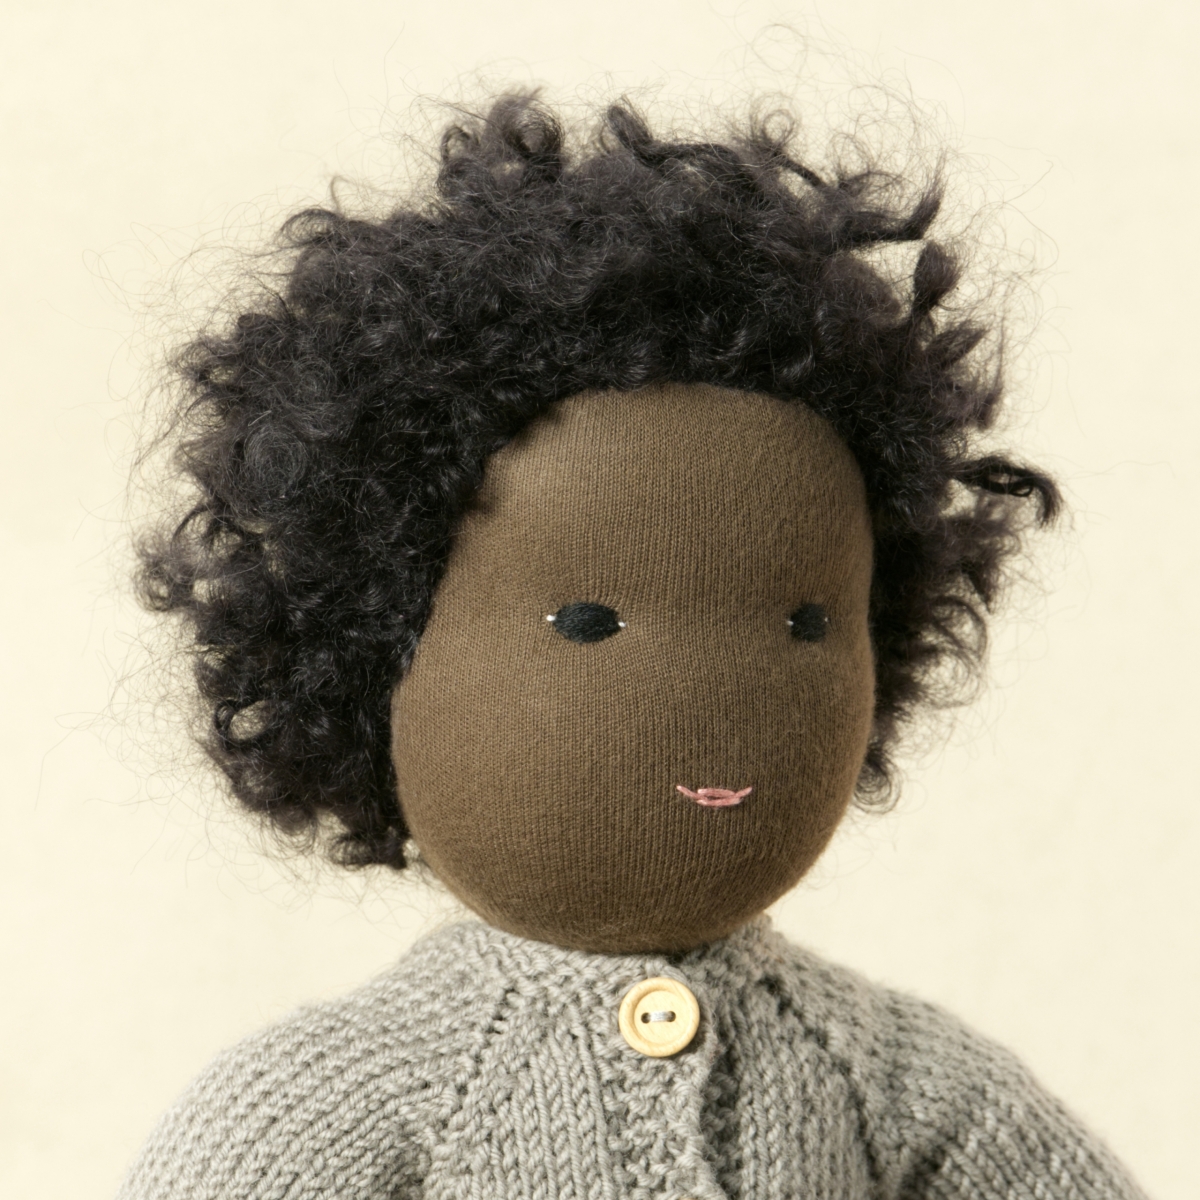 Puppe mit dunklem Hautton nach Waldorf-Art, kurze schwarze Haare, gekleidet in grauen Strickanzug